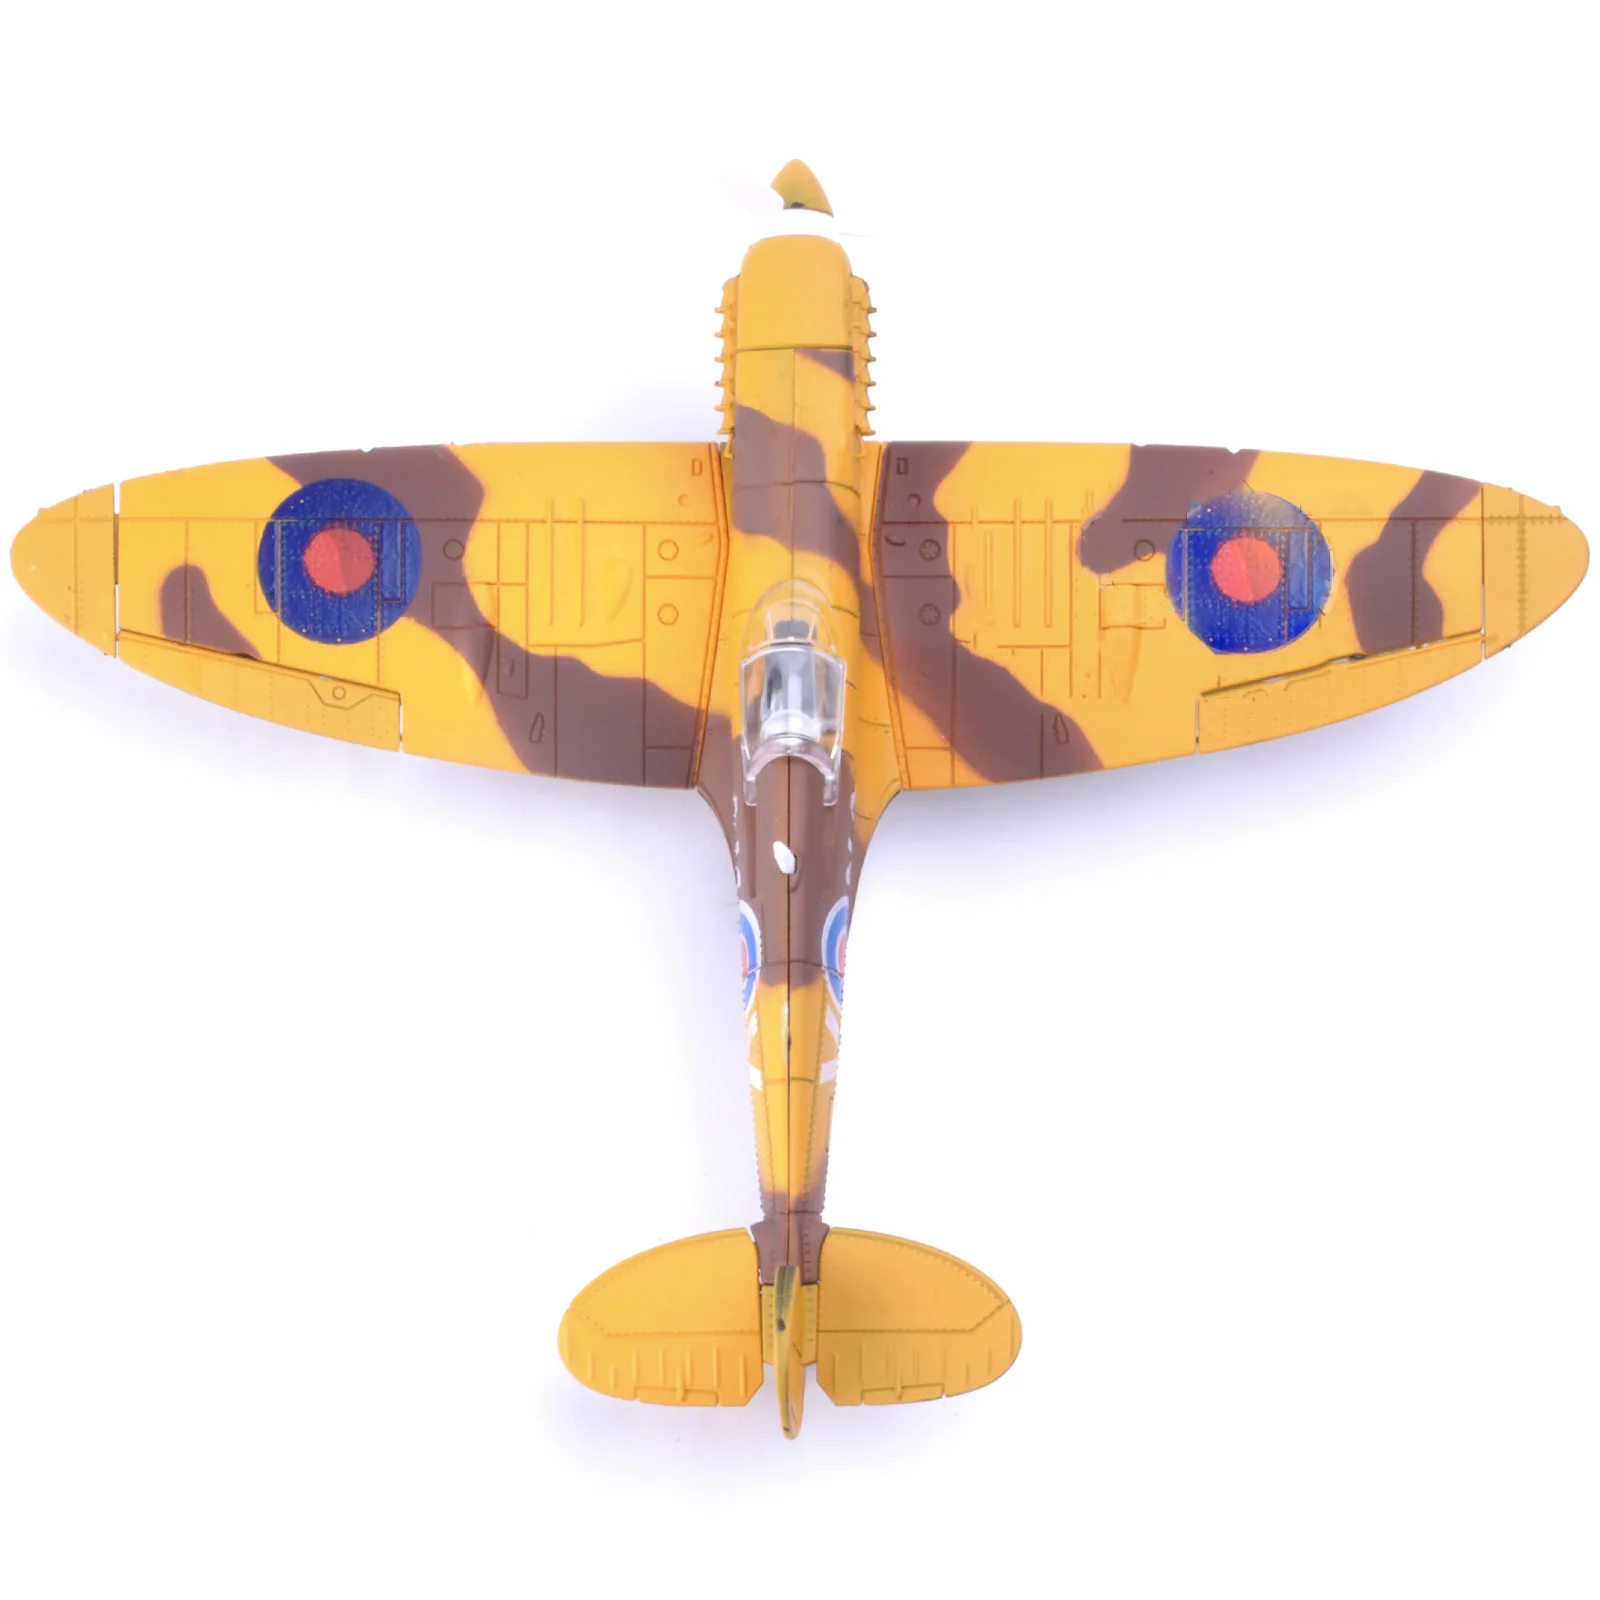 6 шт. различных 22*18 см собрать Истребитель модель игрушки строительный инструмент наборы самолетов Diecast 1/48 масштаб войны-II Spitfire подарок для